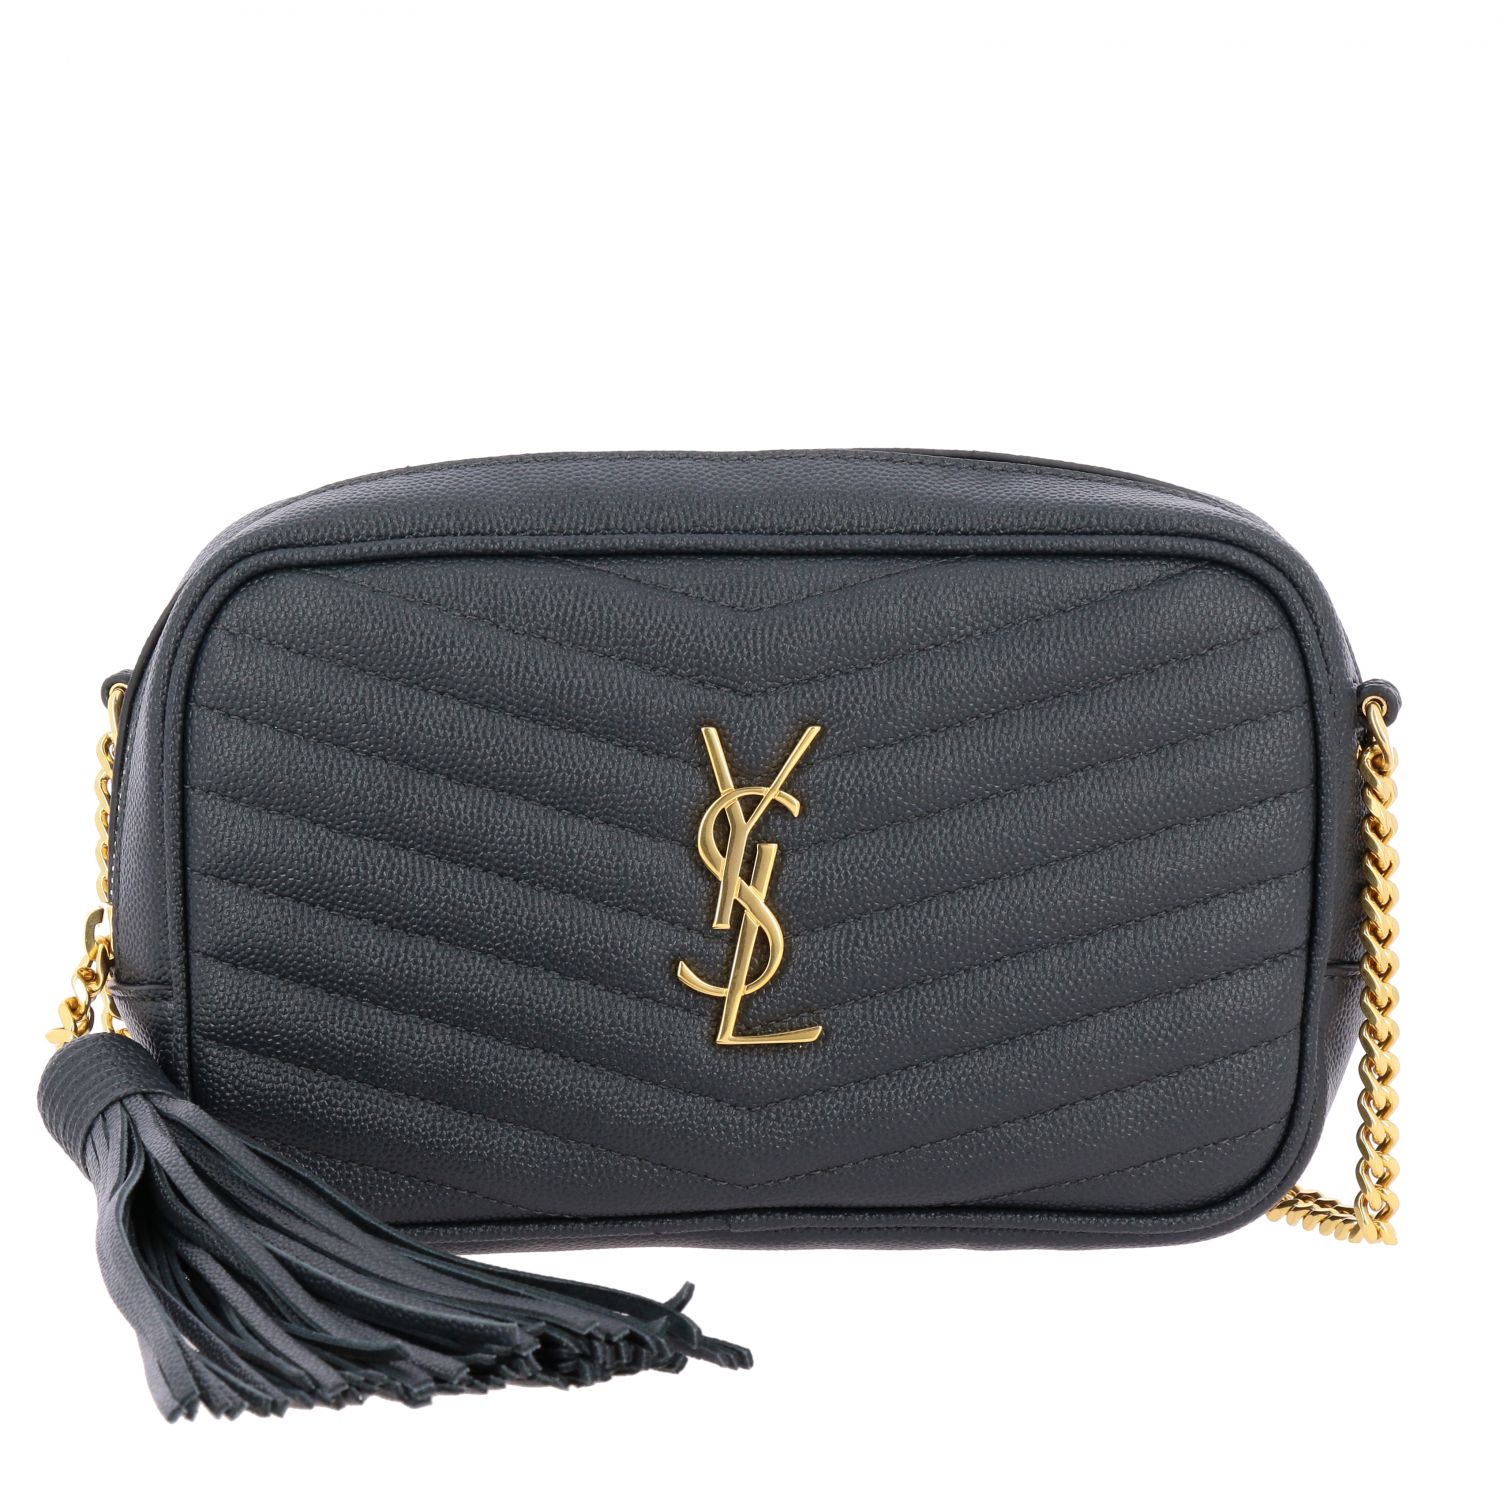 SAINT LAURENT: New Blogger Monogram leather bag - Lead | Saint Laurent ...